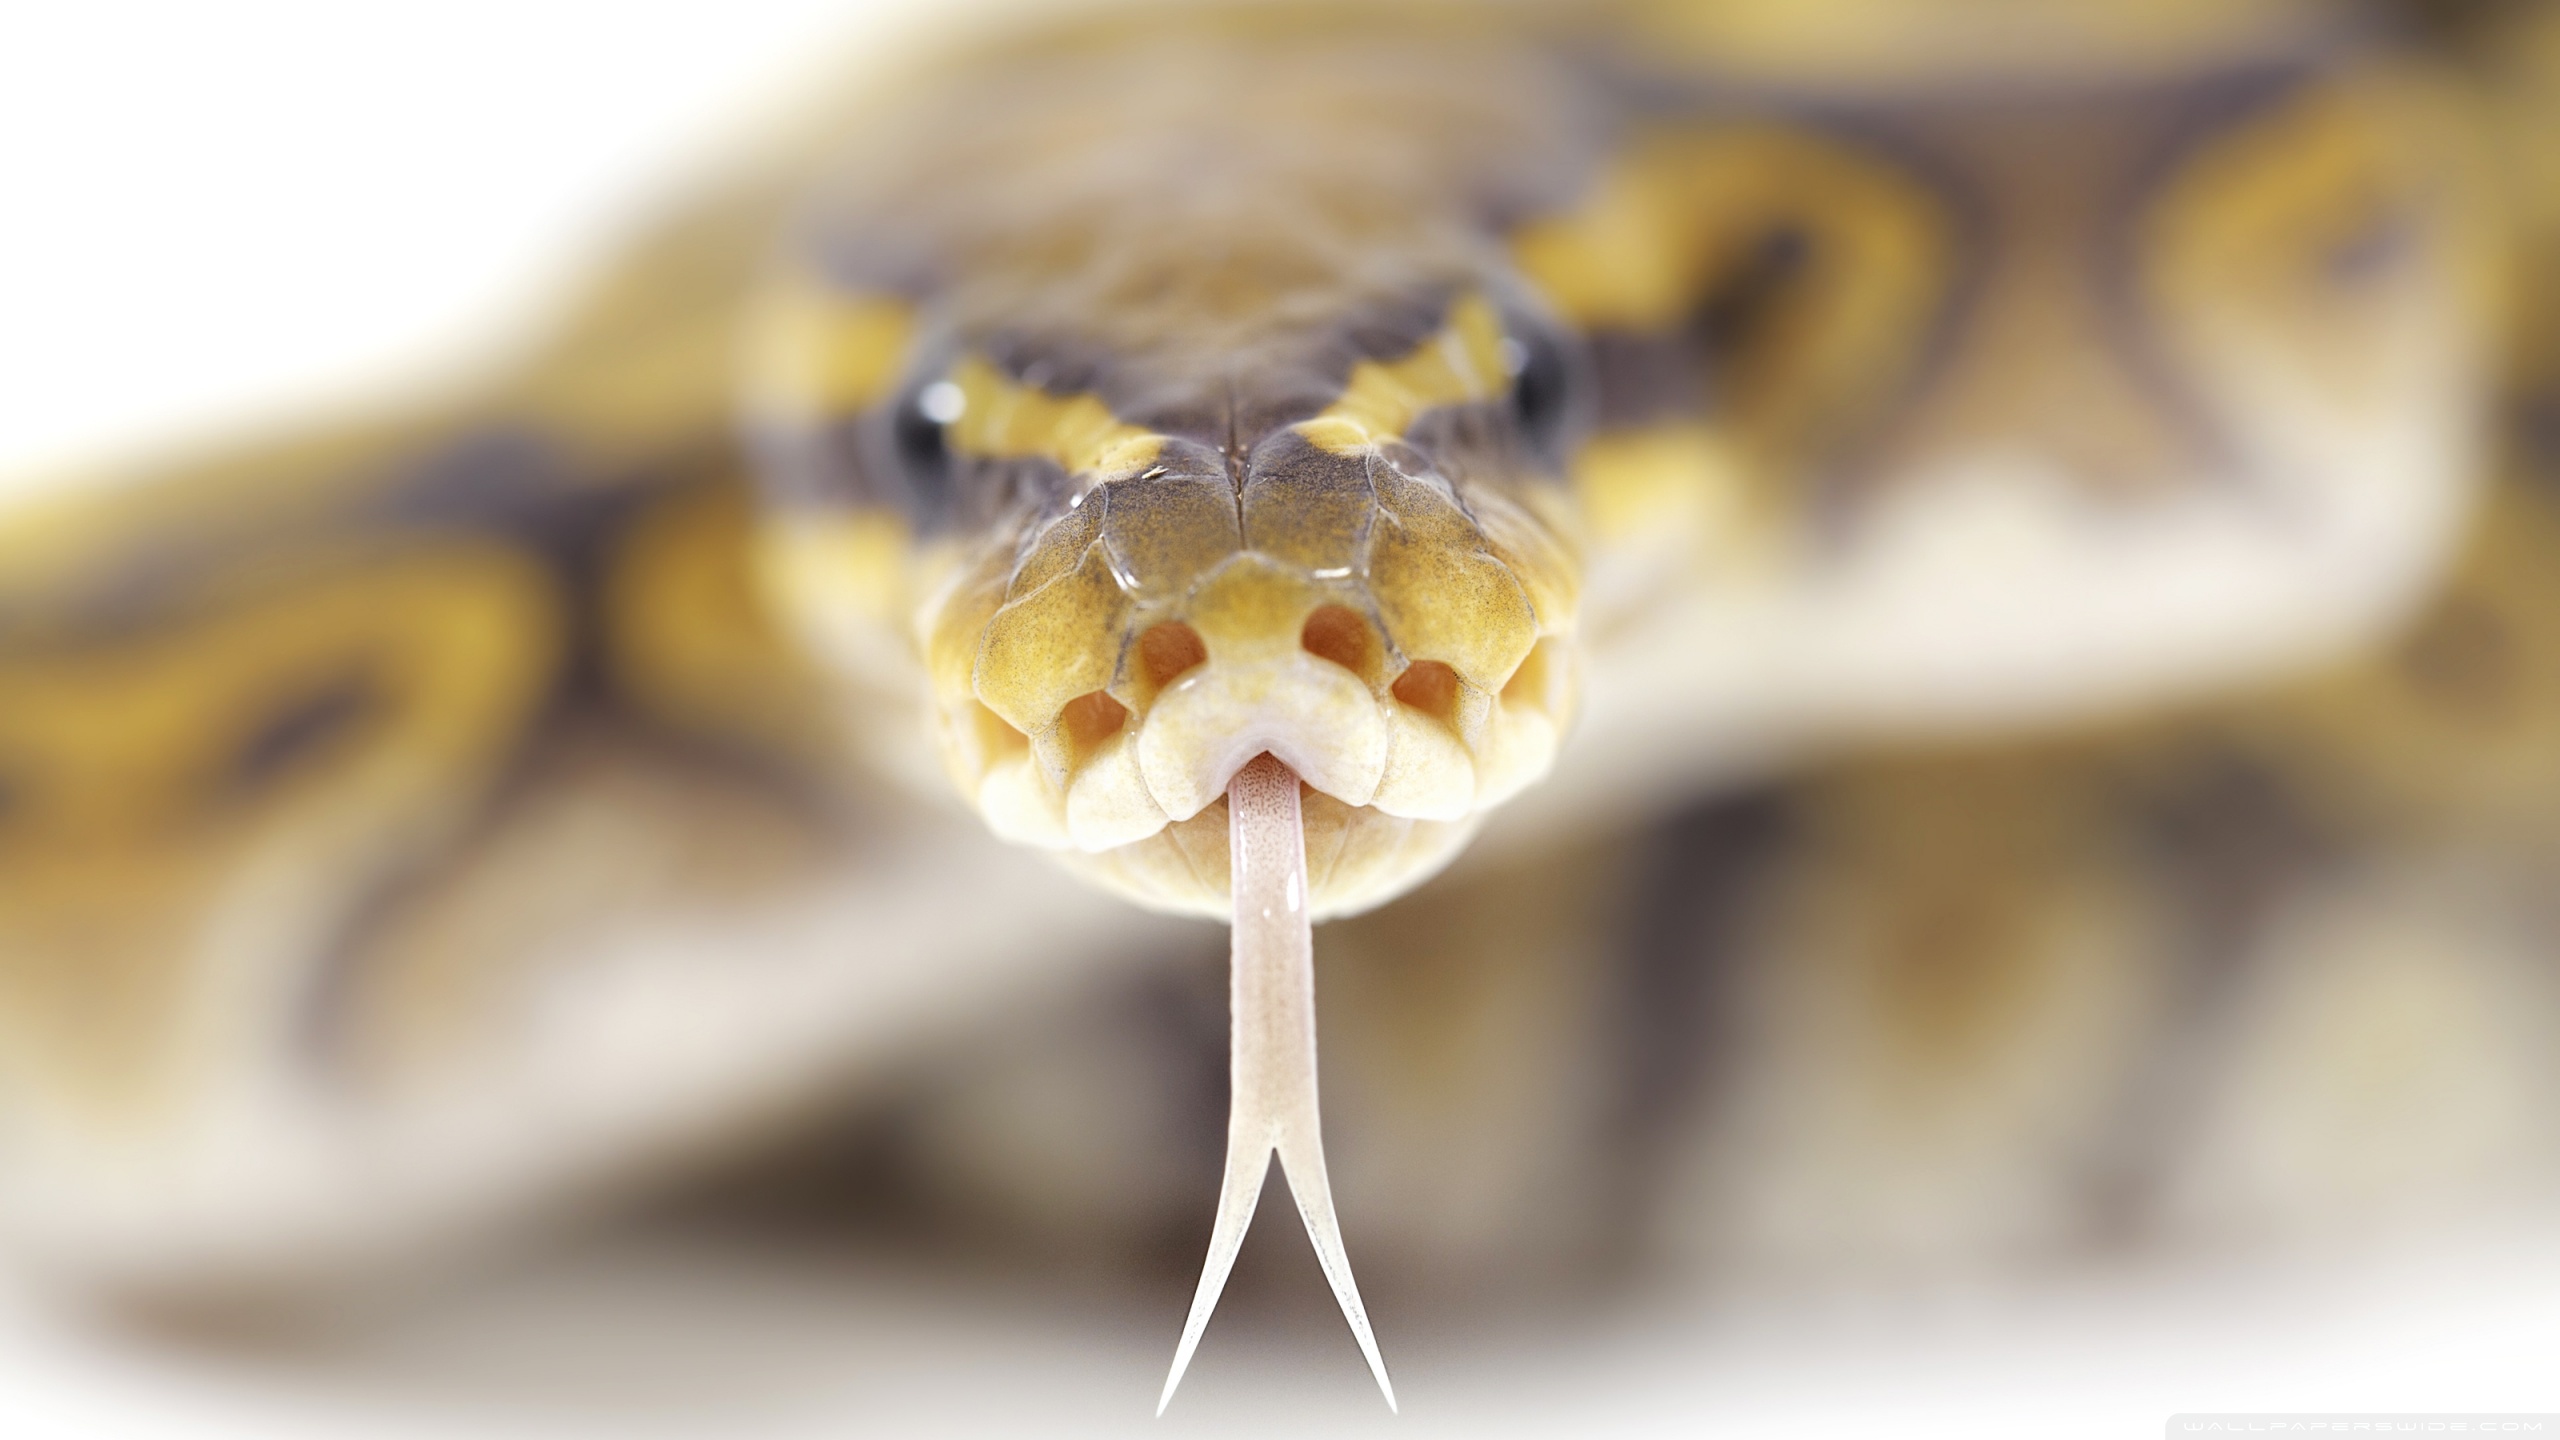 Free download wallpaper Animal, Snake on your PC desktop